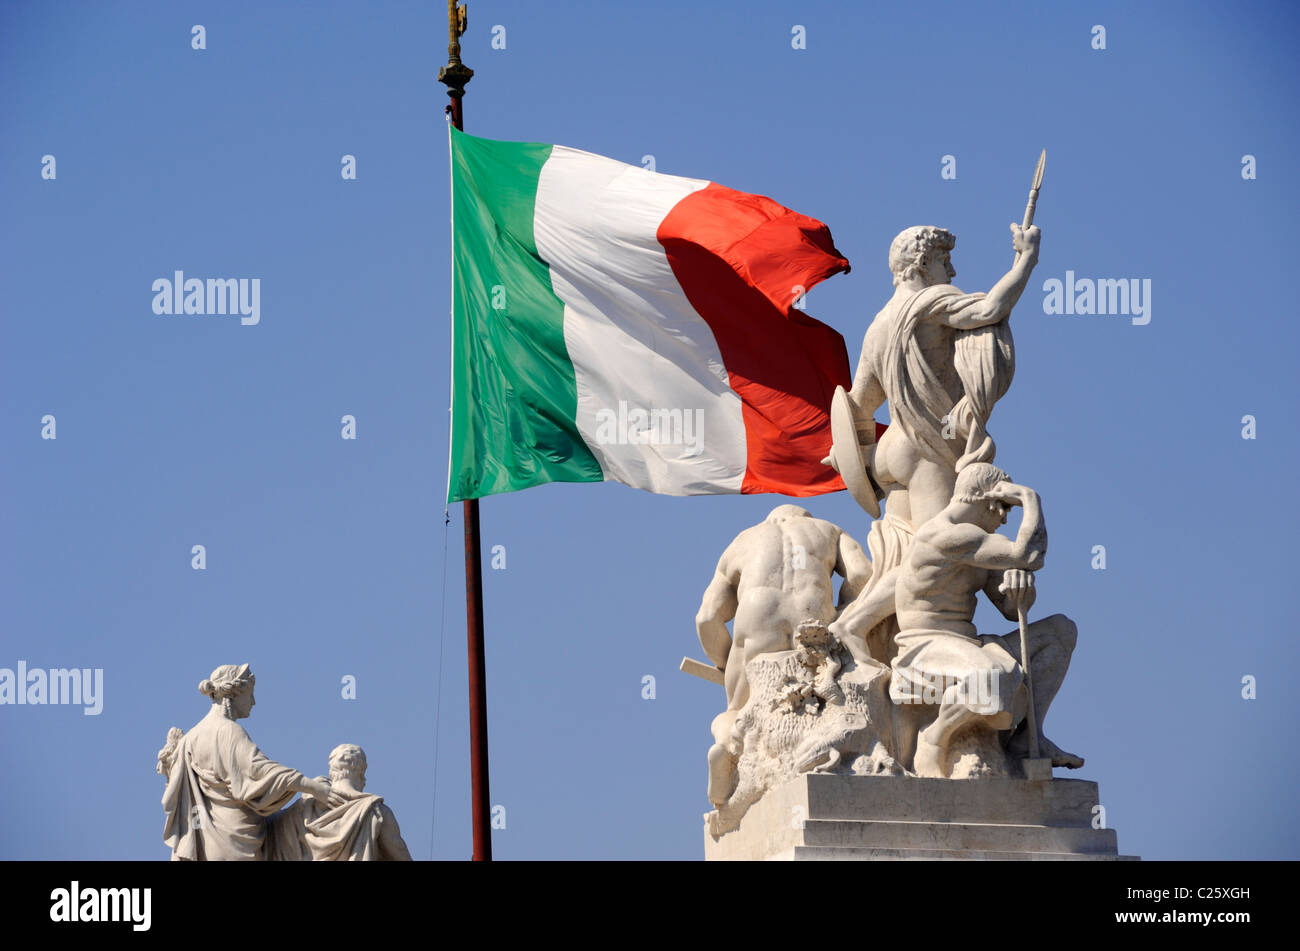 Italia, Roma, Piazza Venezia, Vittoriano, statue e bandiera italiana Foto Stock